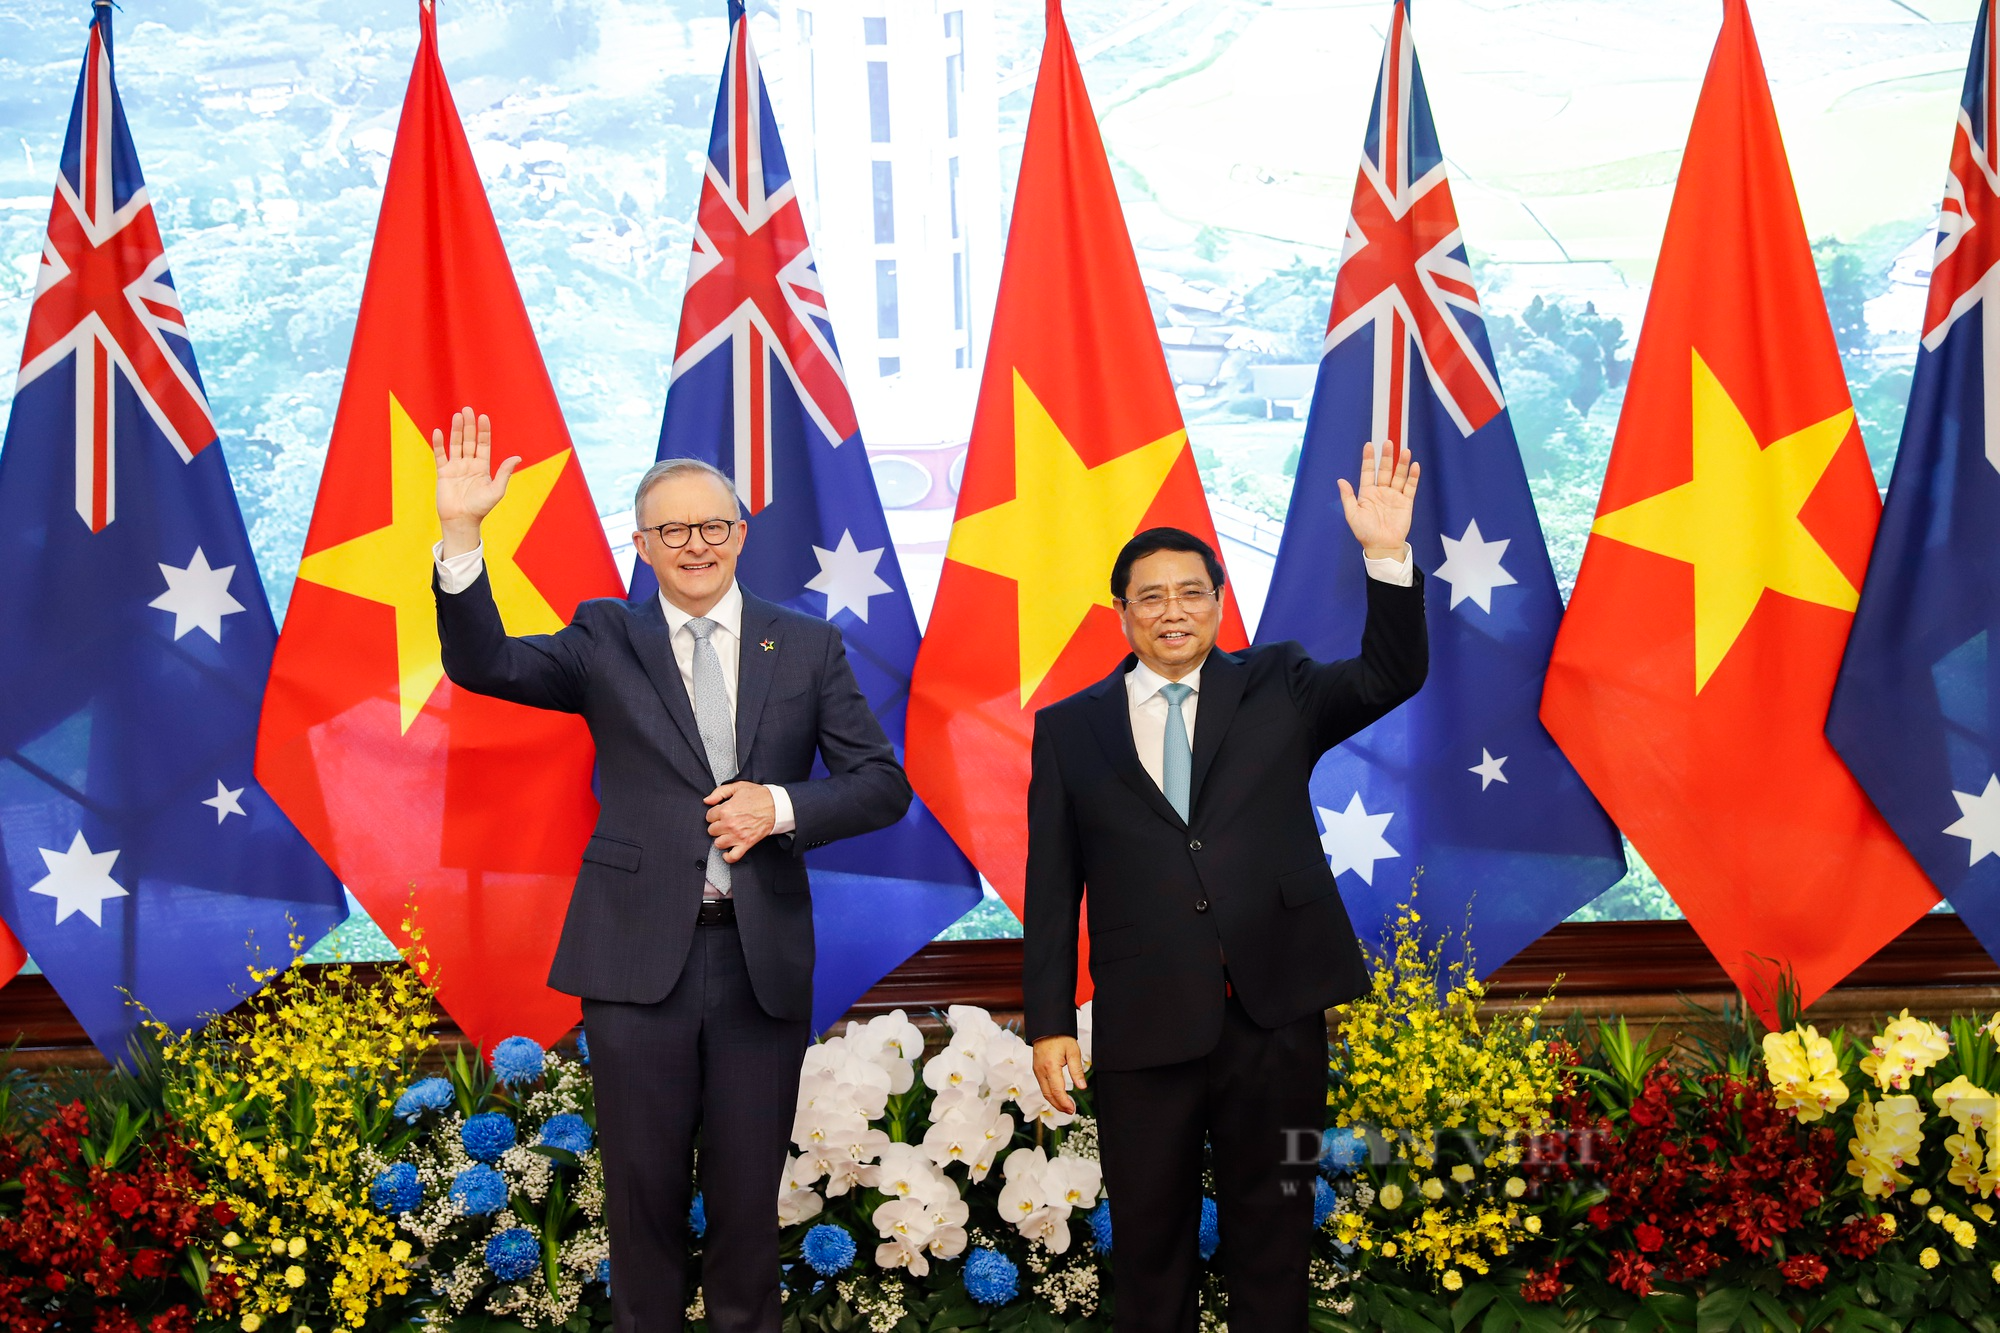 Australia hỗ trợ Việt Nam 105 triệu AUD cho hợp tác cơ sở hạ tầng, chuyển đổi năng lượng - Ảnh 2.